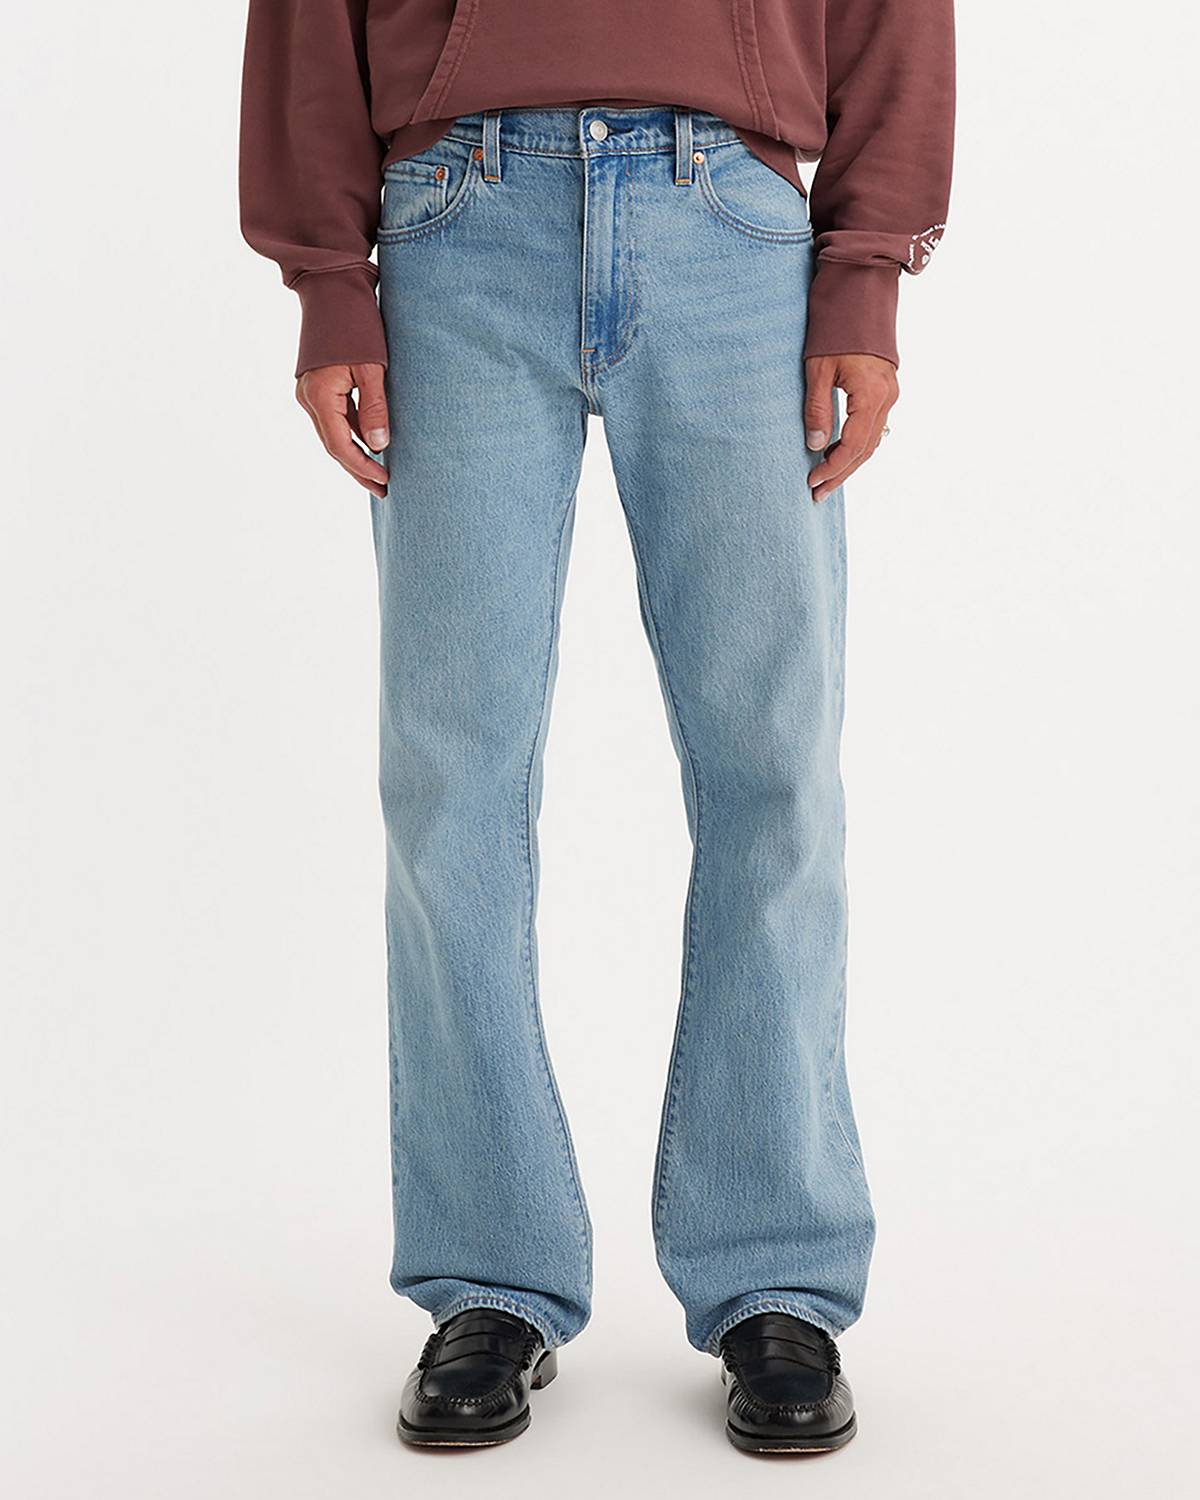 Men's Jeans: Shop the Best Jeans for Men